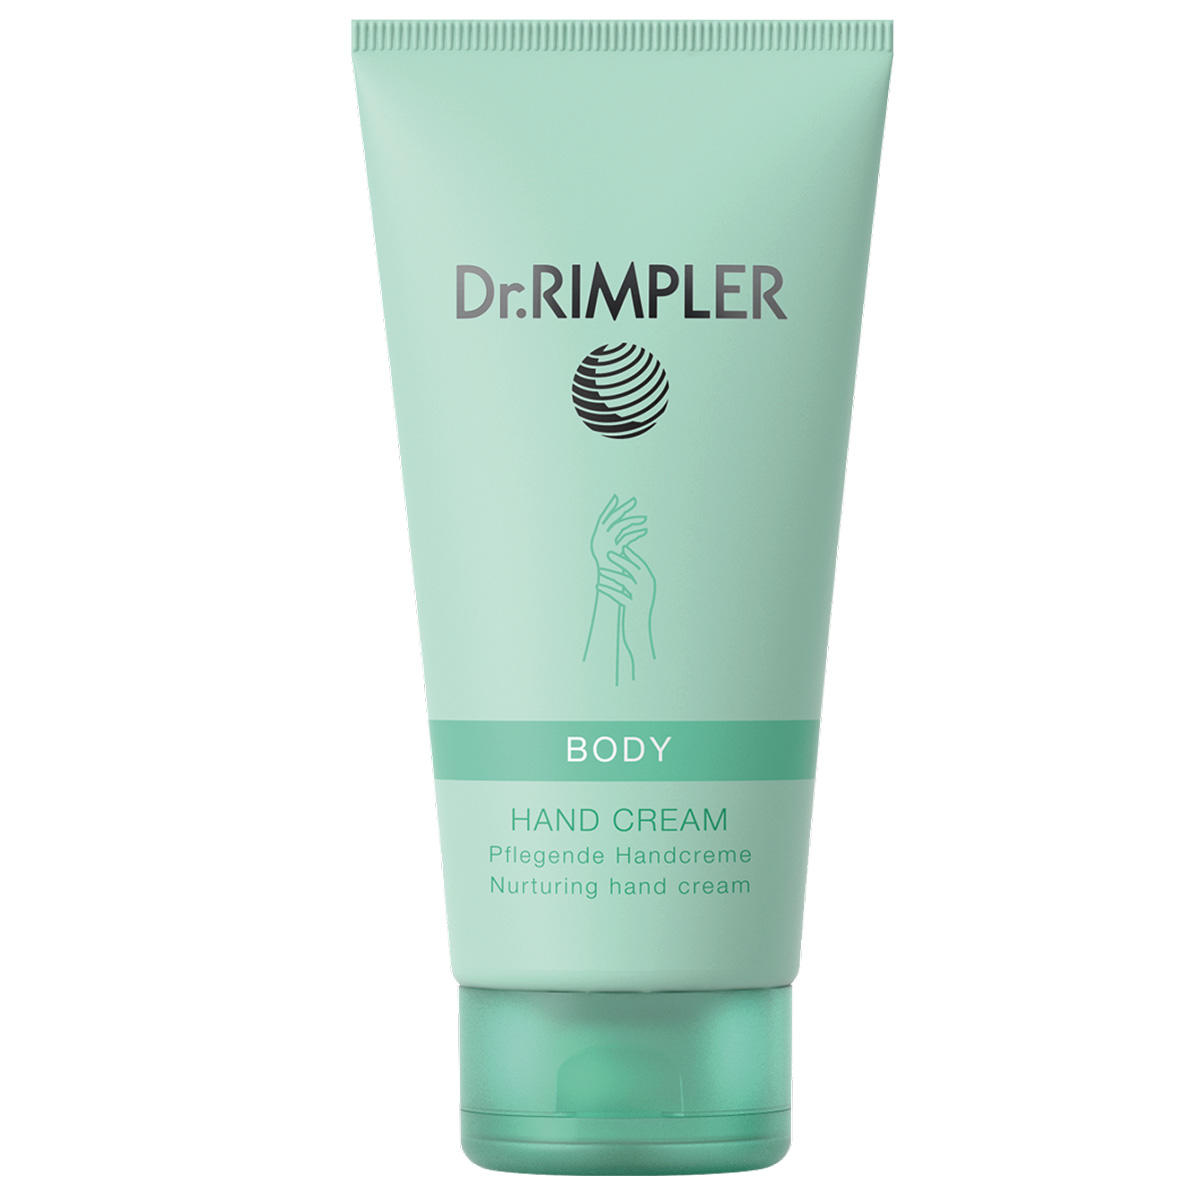 Dr. RIMPLER BODY Hand Cream 100 ml - 1